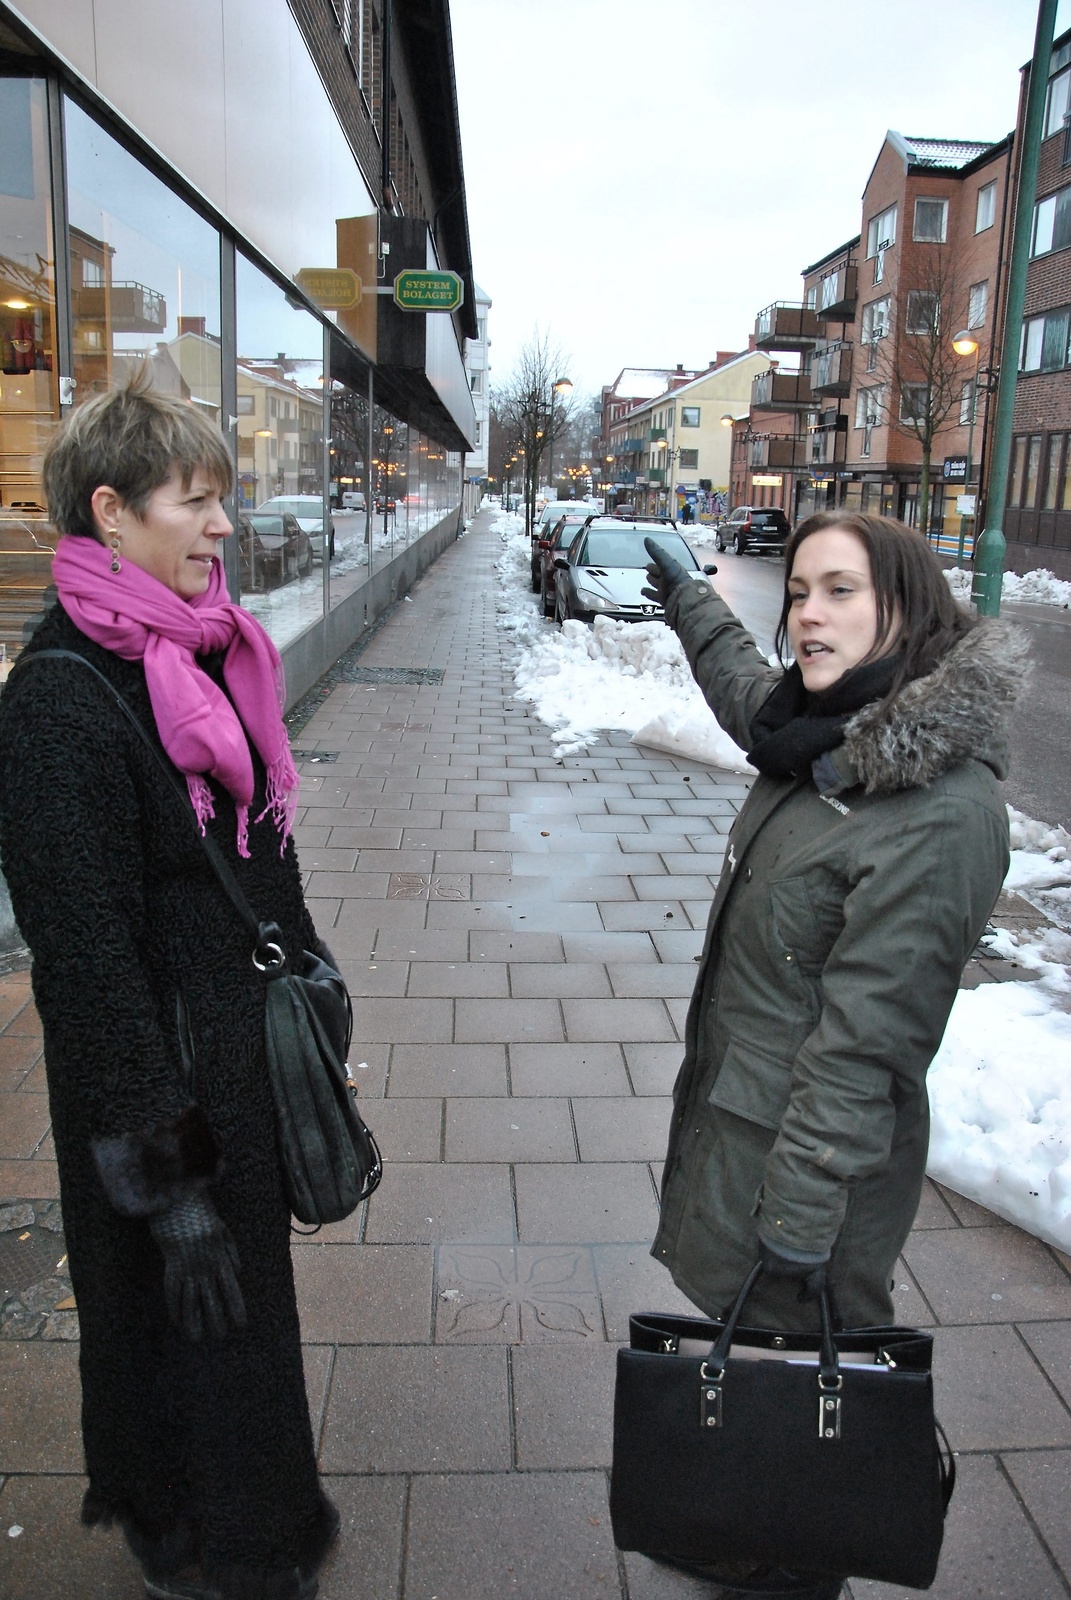 Tråkigt med en lång gata utan några skyltfönster eller inbjudande affärer. Dåligt utnyttjat, menar Kathrine Heiberg och Sandra Holm.